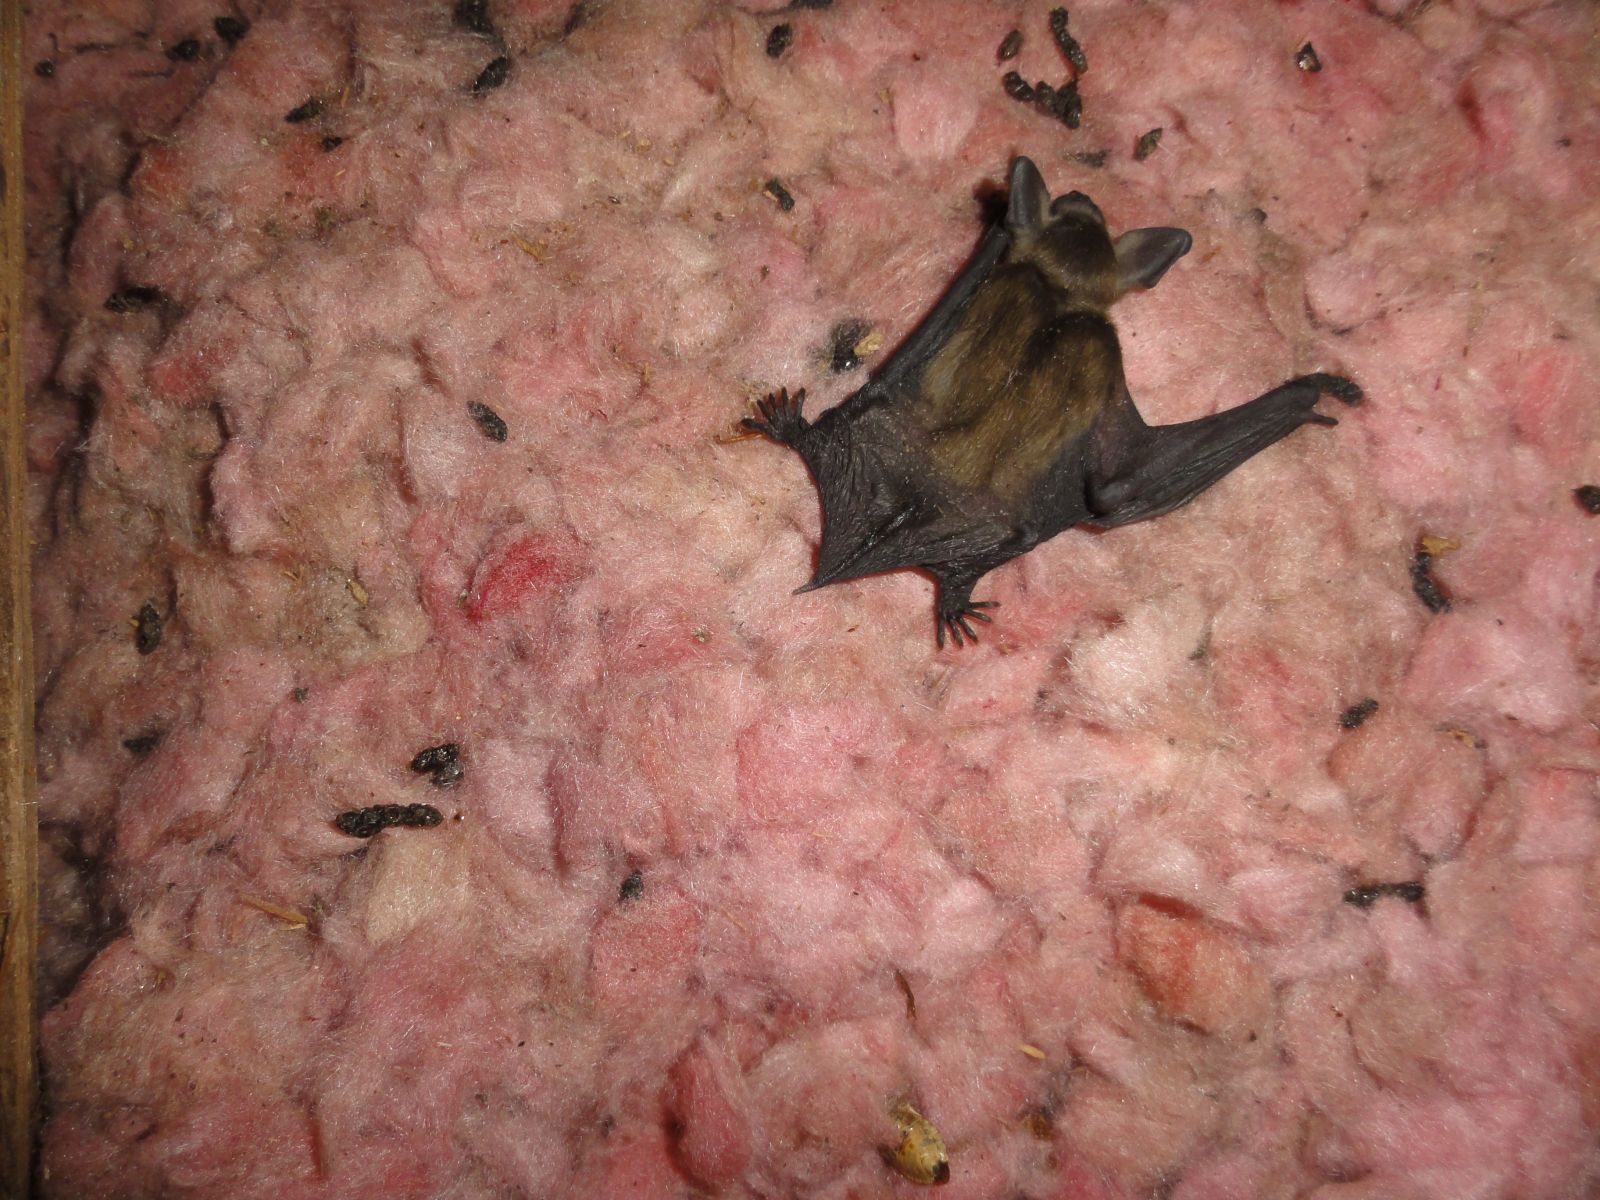 Newport News, VA - Baby Bat